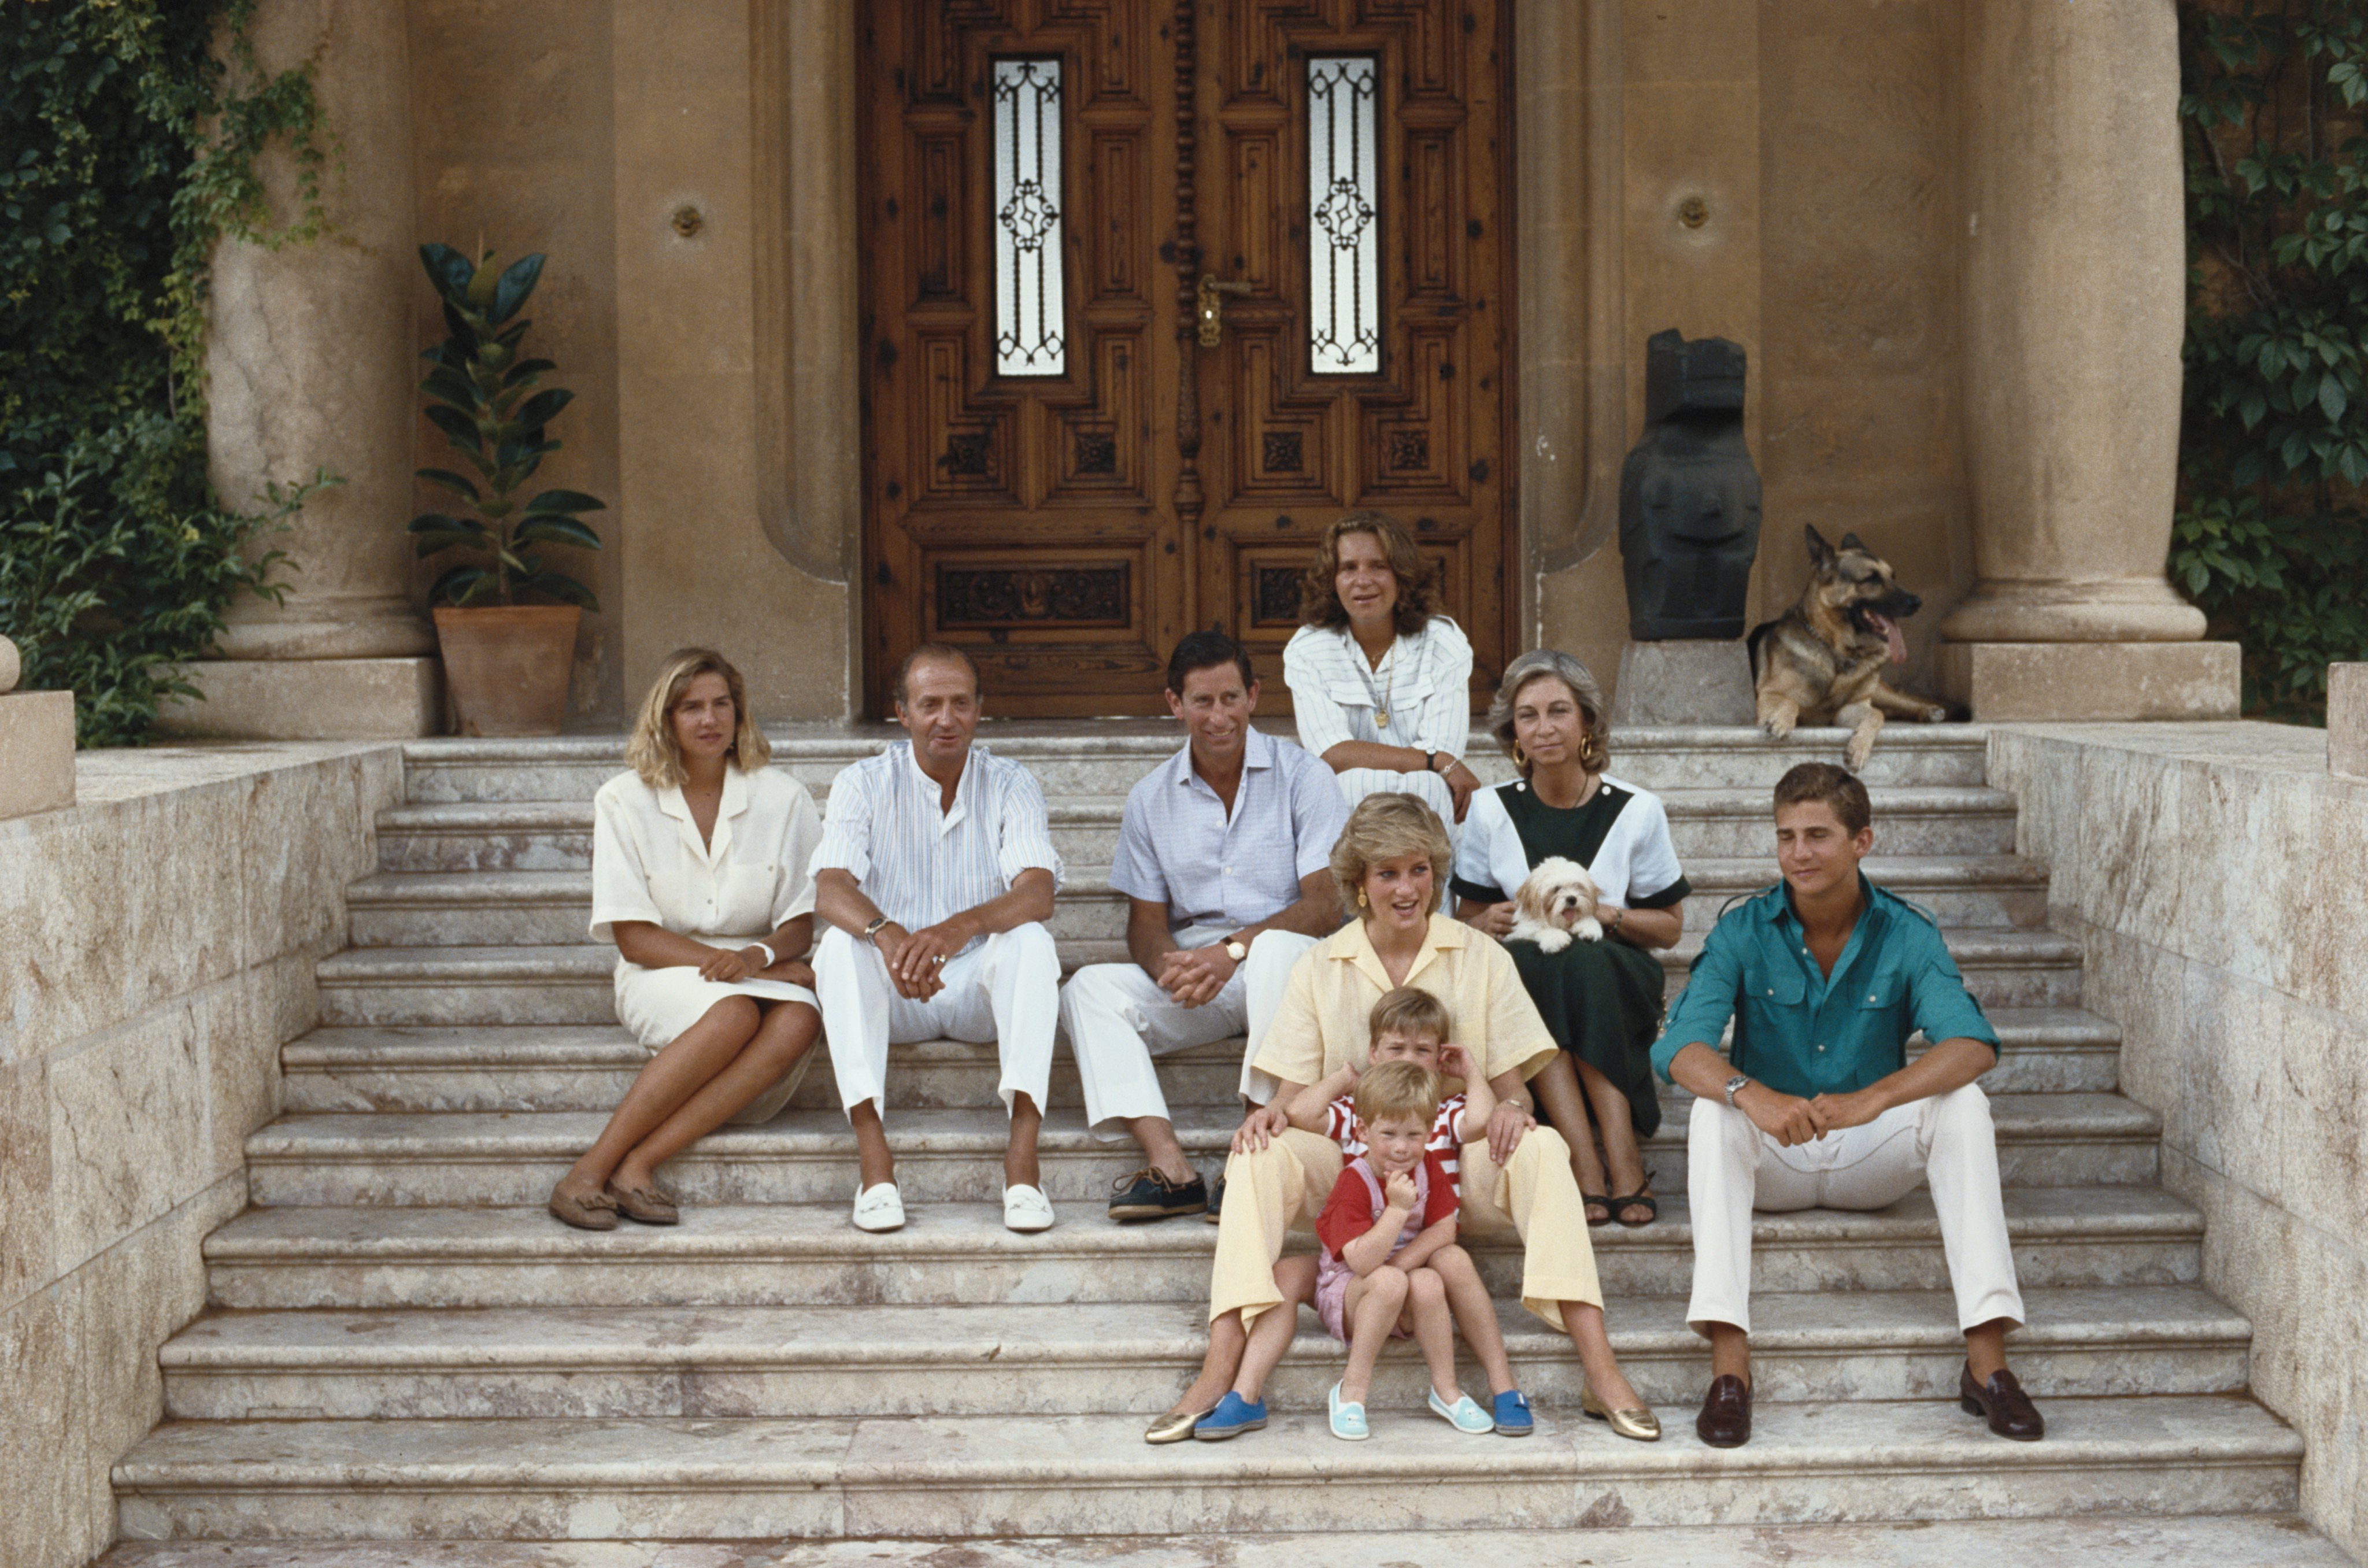 Príncipe Charles e a Princesa Diana com os seus filhos, William e Harry, em conjunto com a família real espanhola (1987)